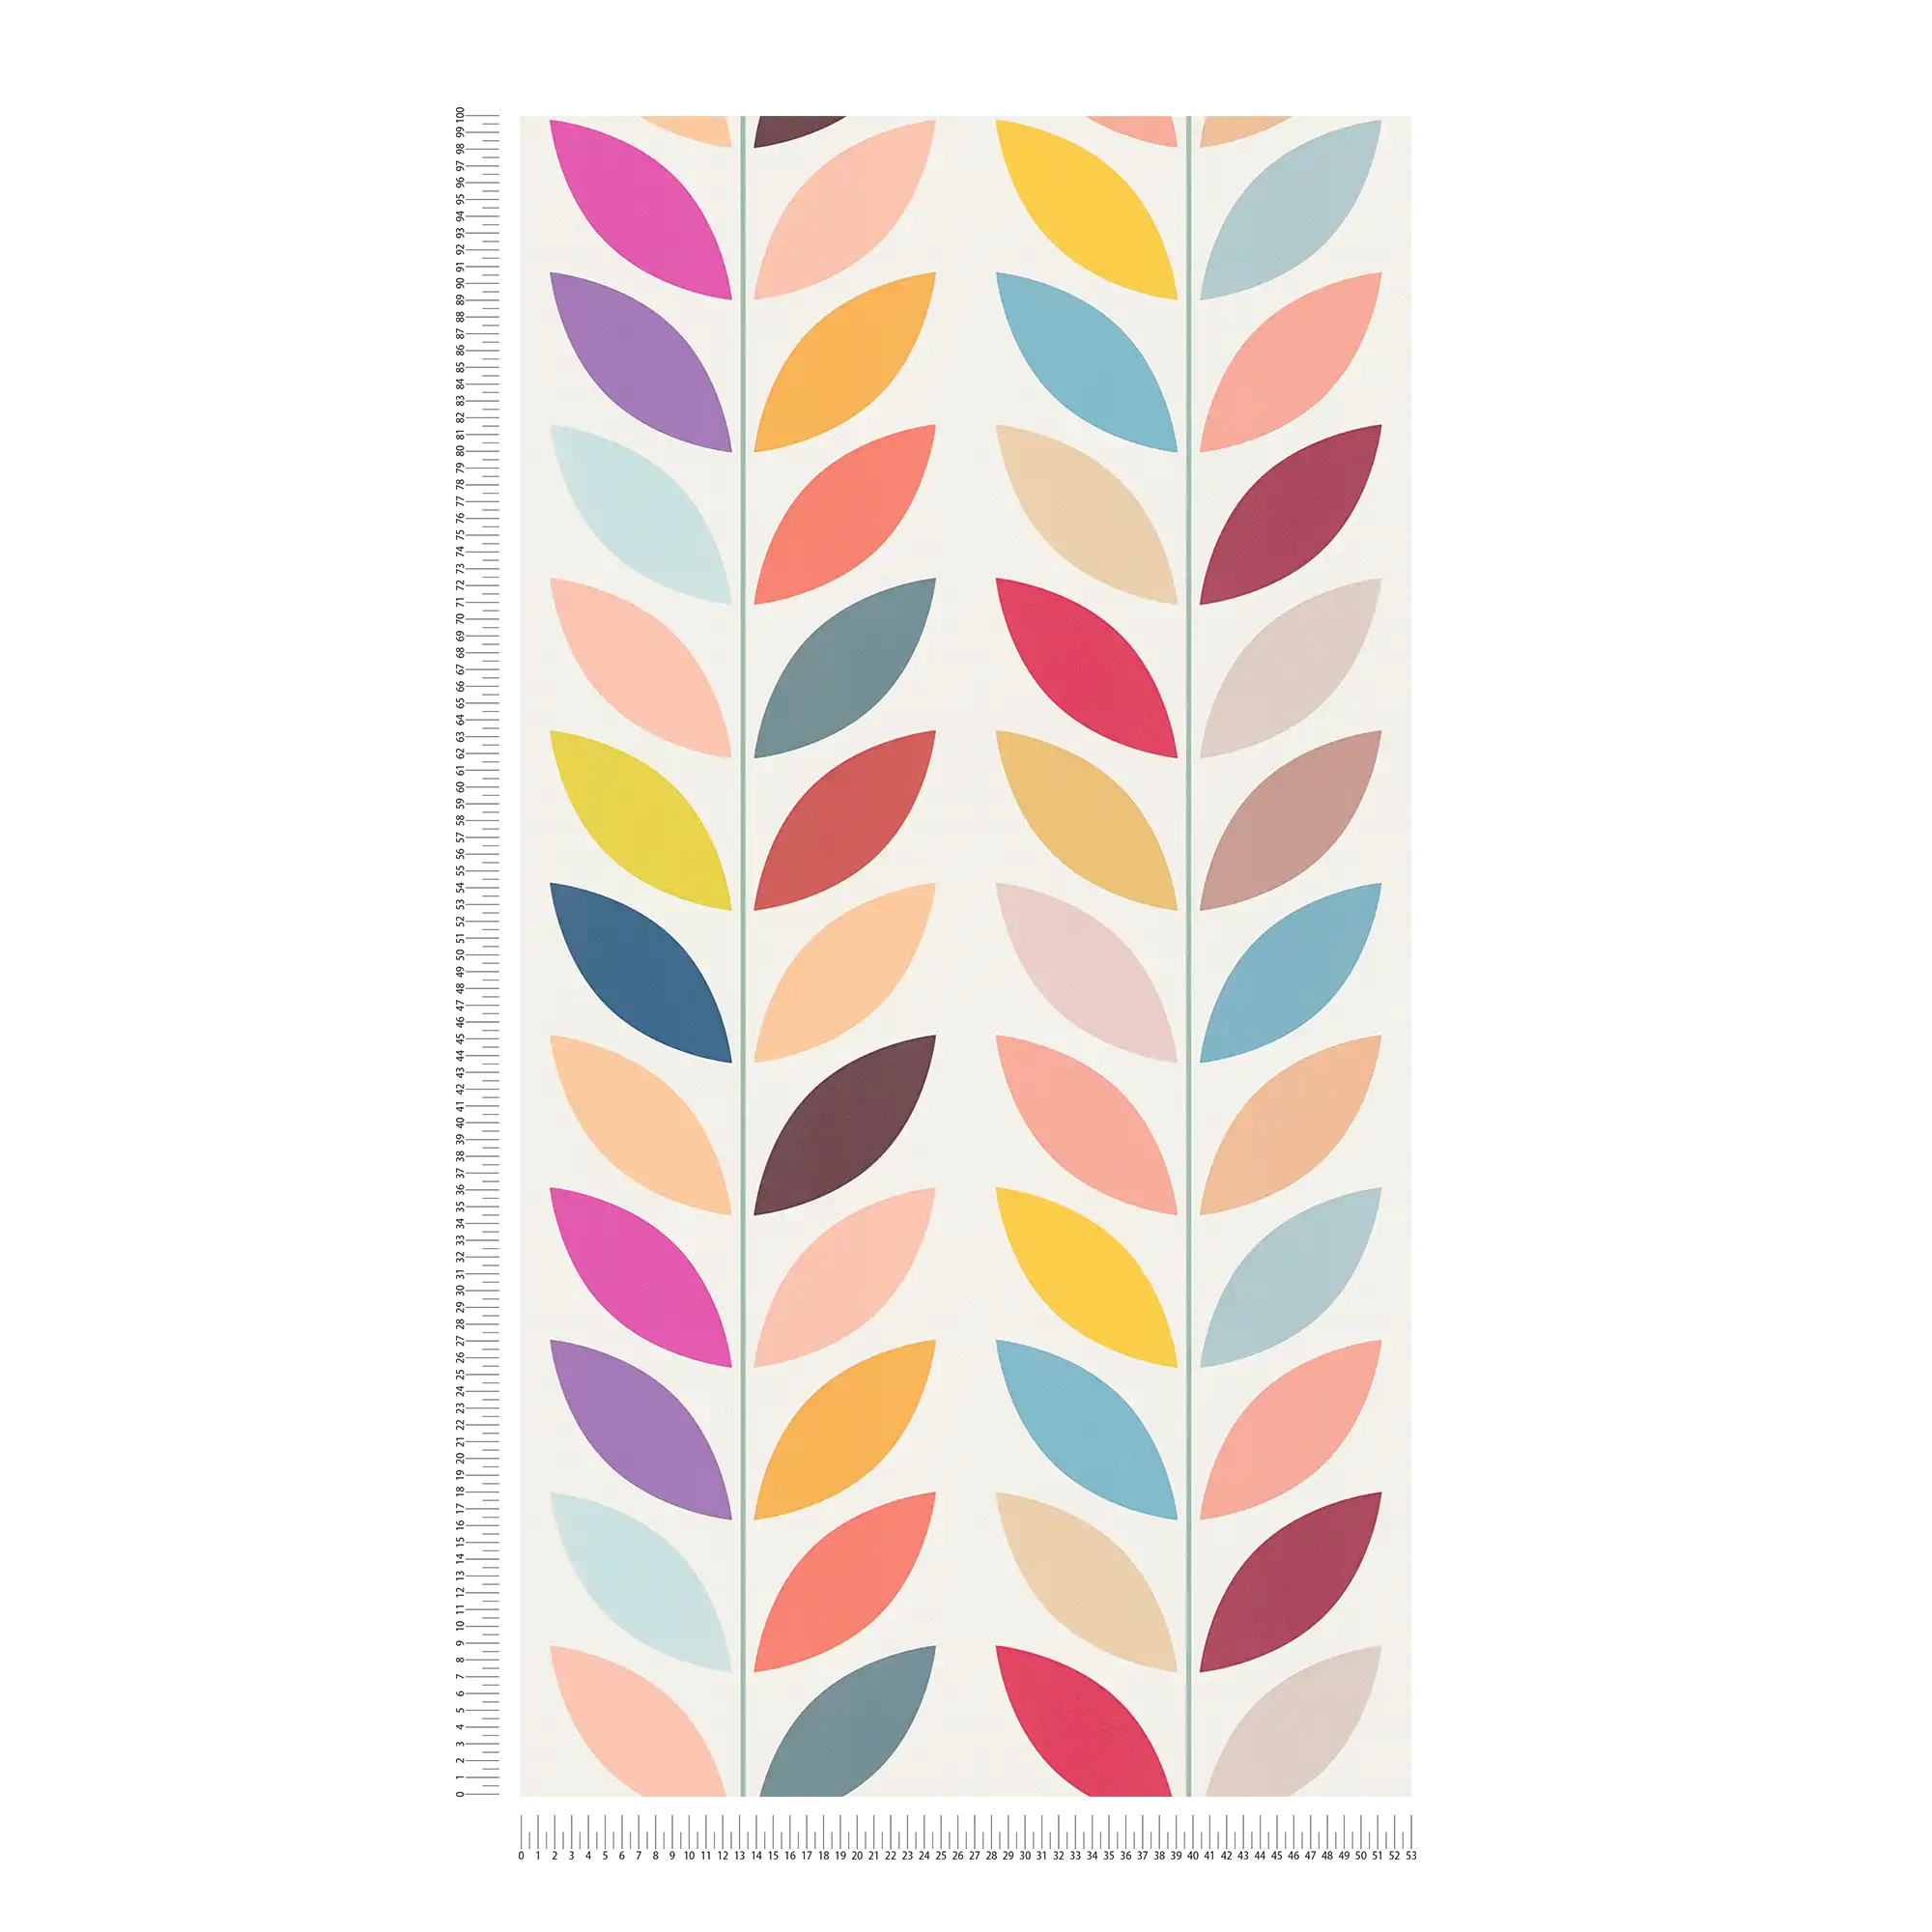             Papier peint intissé rétro avec motifs de feuilles colorées frappantes - crème, multicolore
        